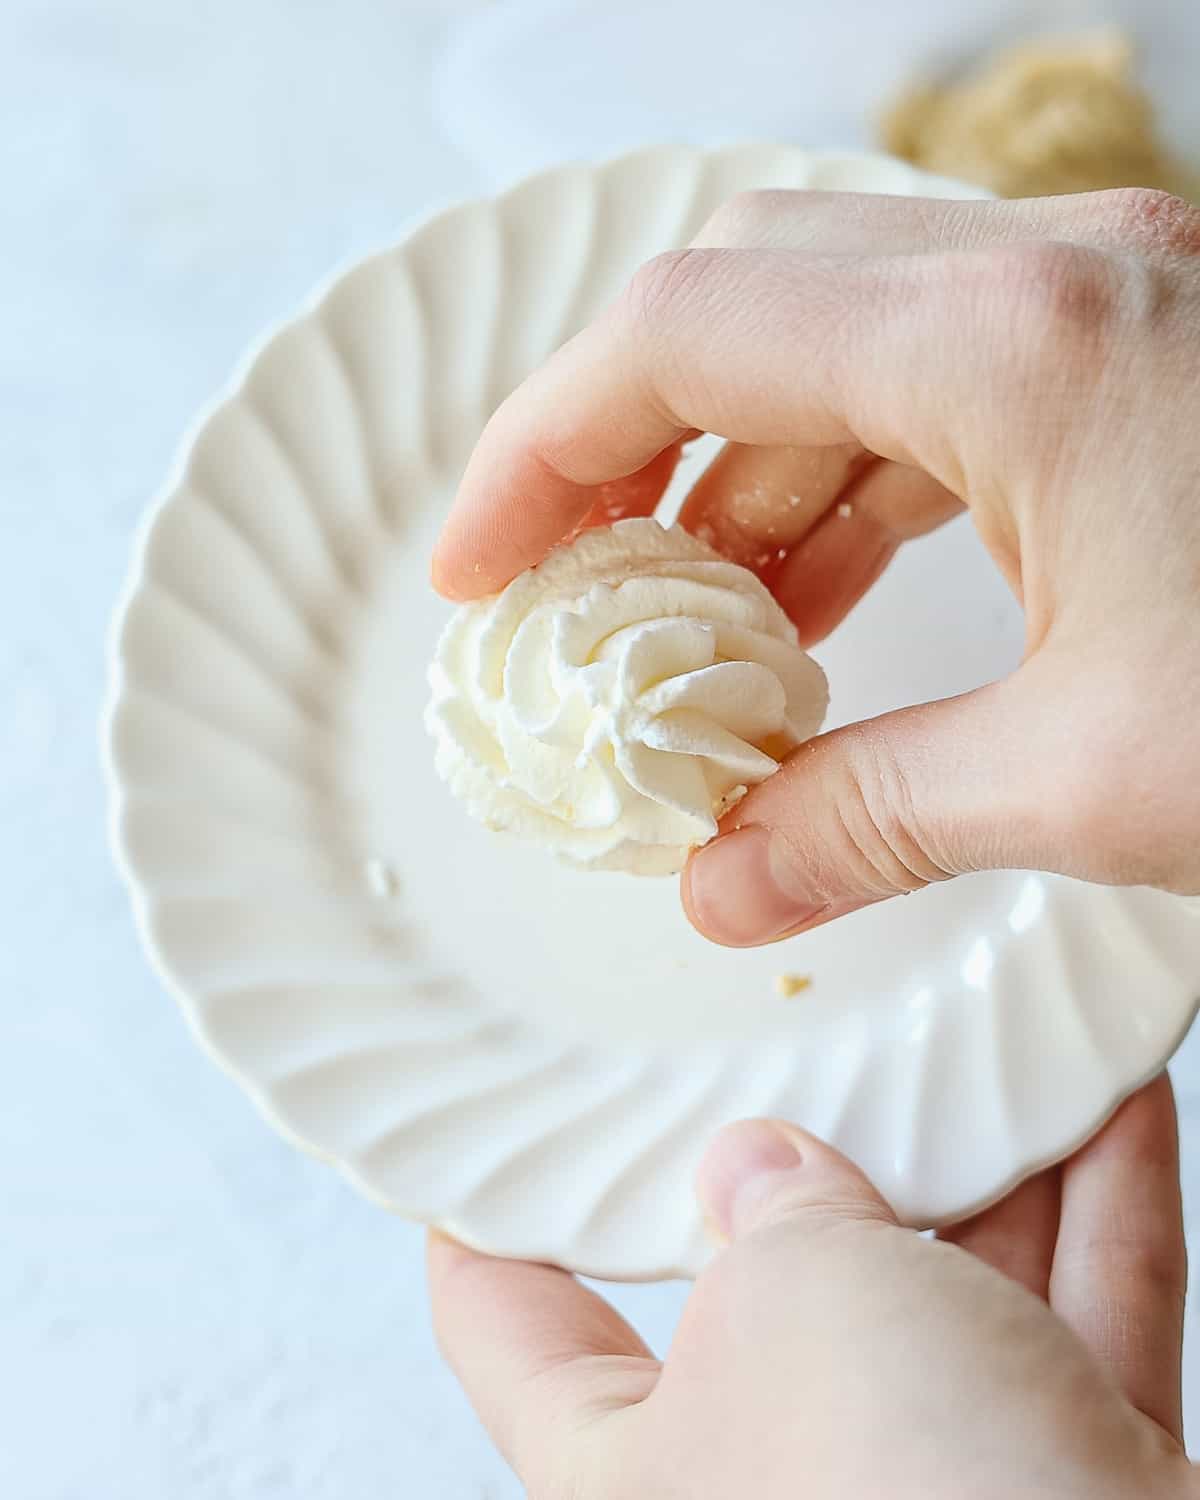 Holding a frozen rosette of homemade whipped cream.